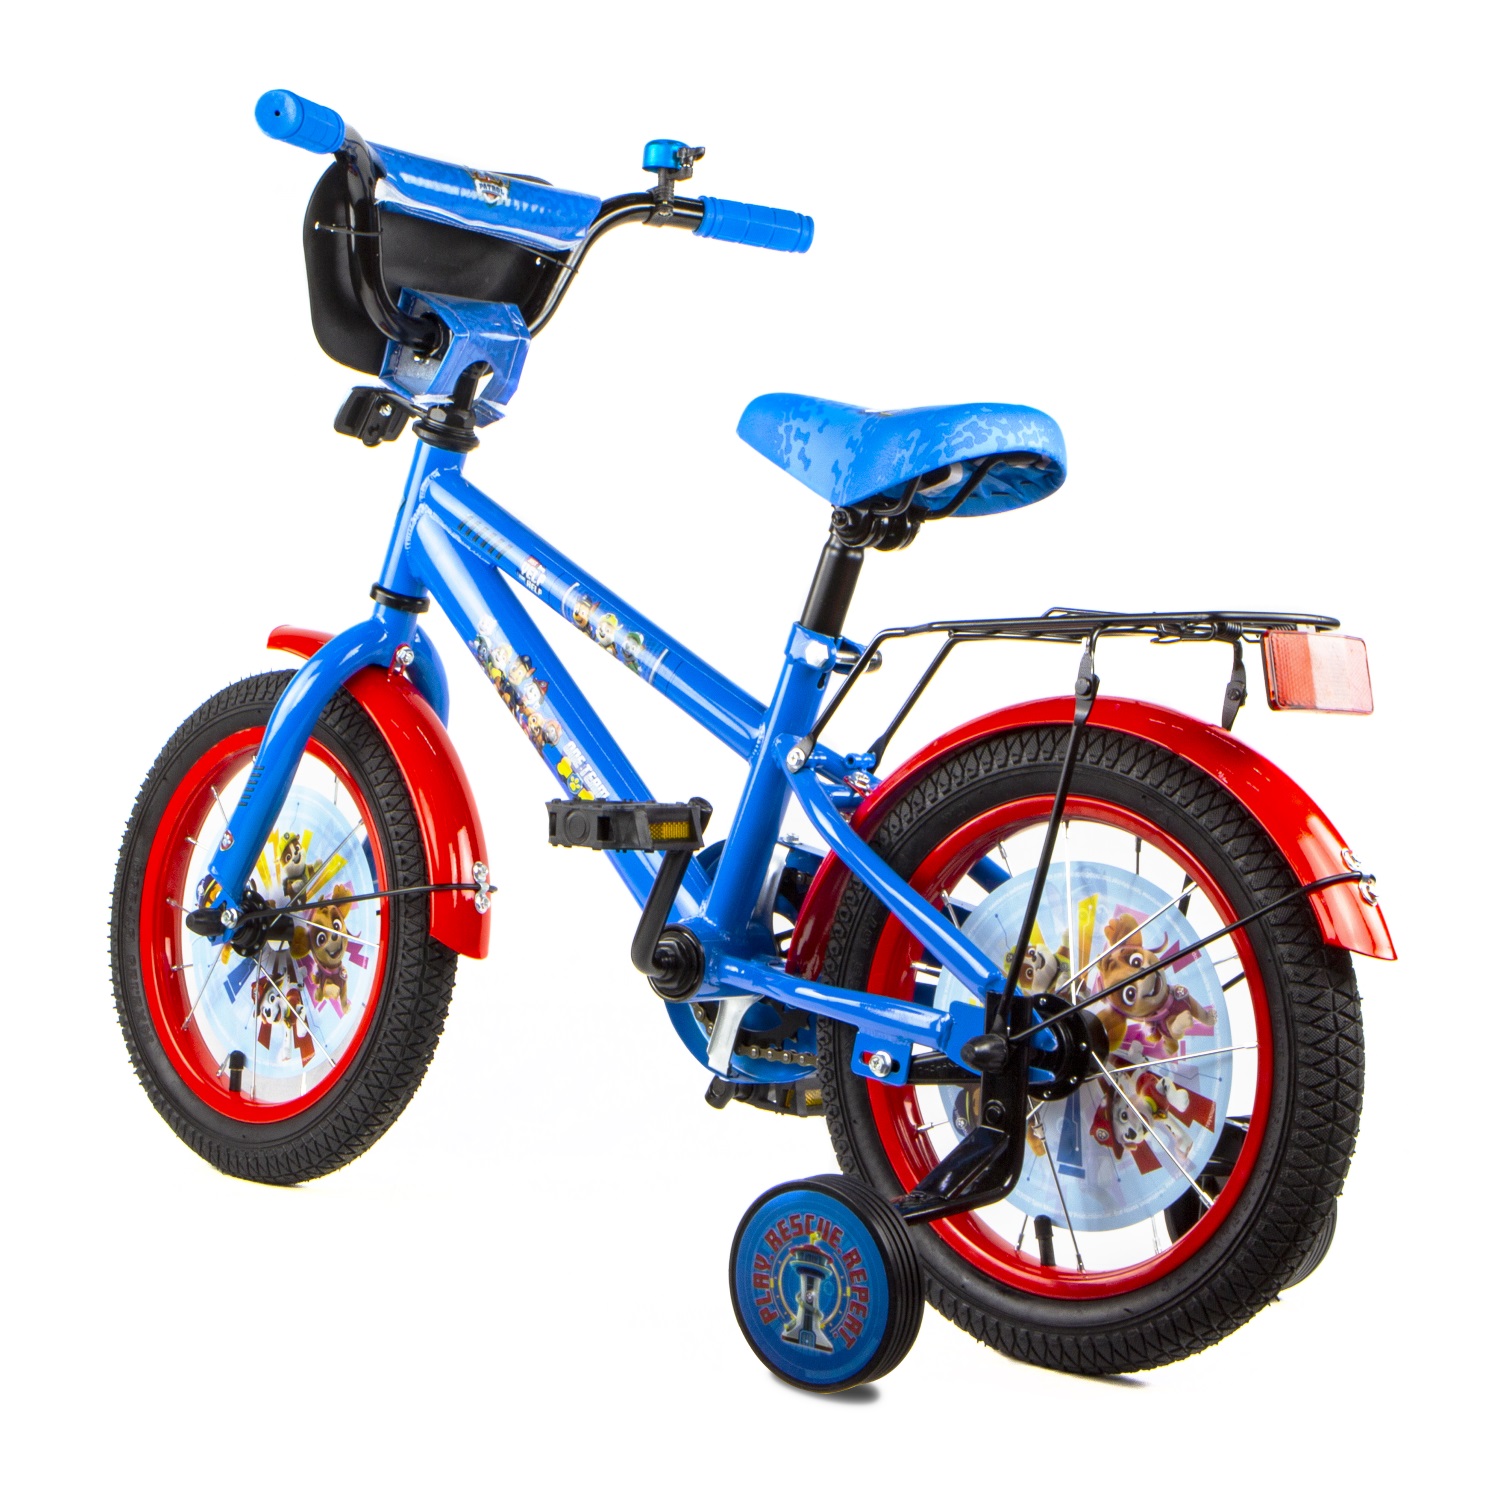 Детский велосипед - Щенячий патруль, диаметр колес 14 дюймов  